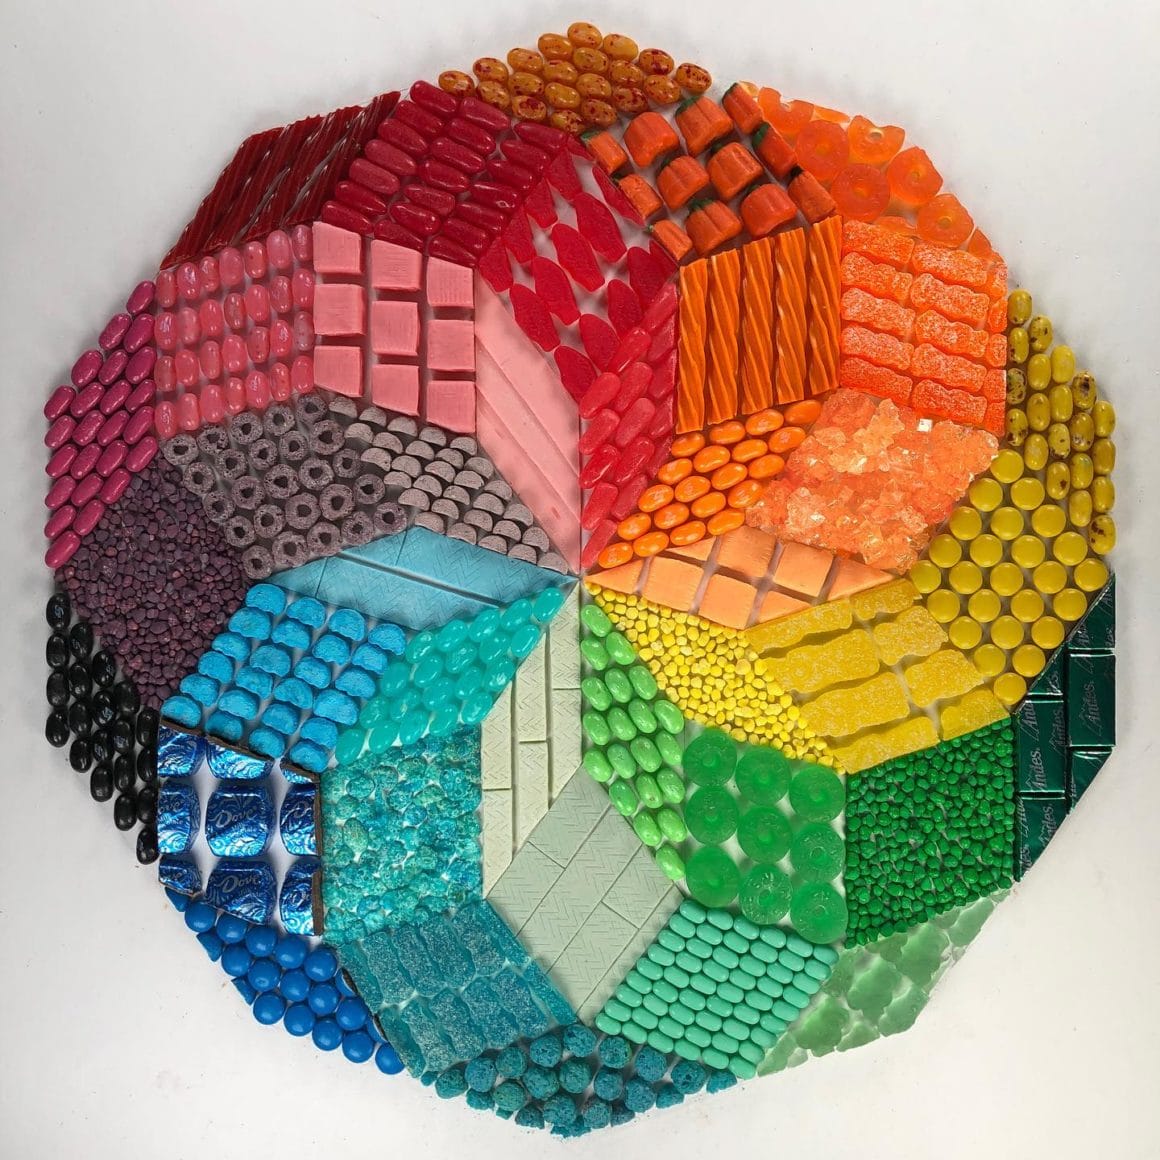 Oeuvre illusionniste représentant une rosace multicolore réalisée avec des bonbons